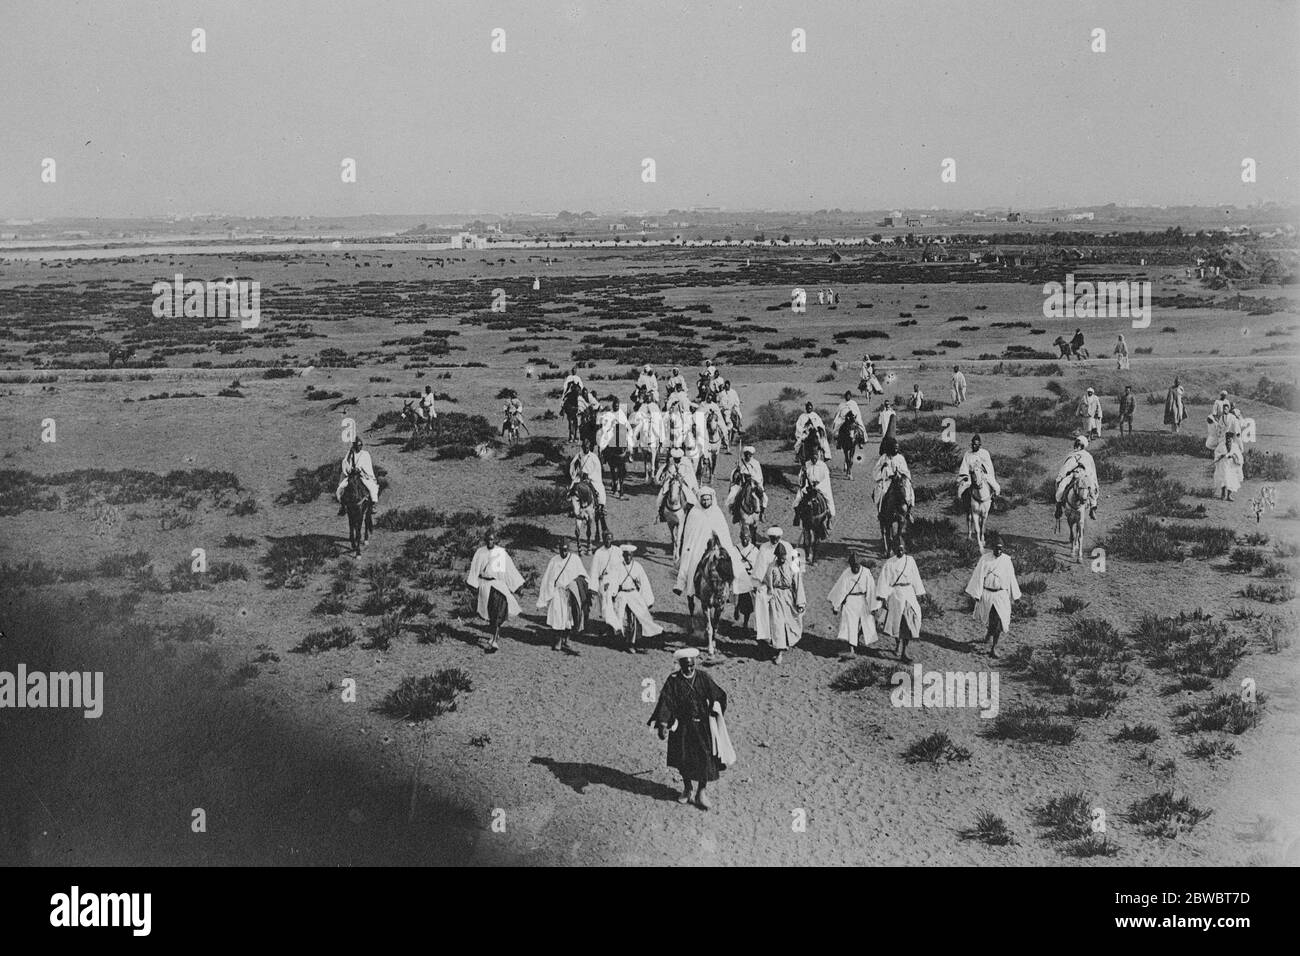 En su camino a orar en el desierto, el Sultán de Marruecos fotogafed en un viernes reciente a unas pocas millas fuera de la pared de Rabat 14 de octubre de 1924 Foto de stock